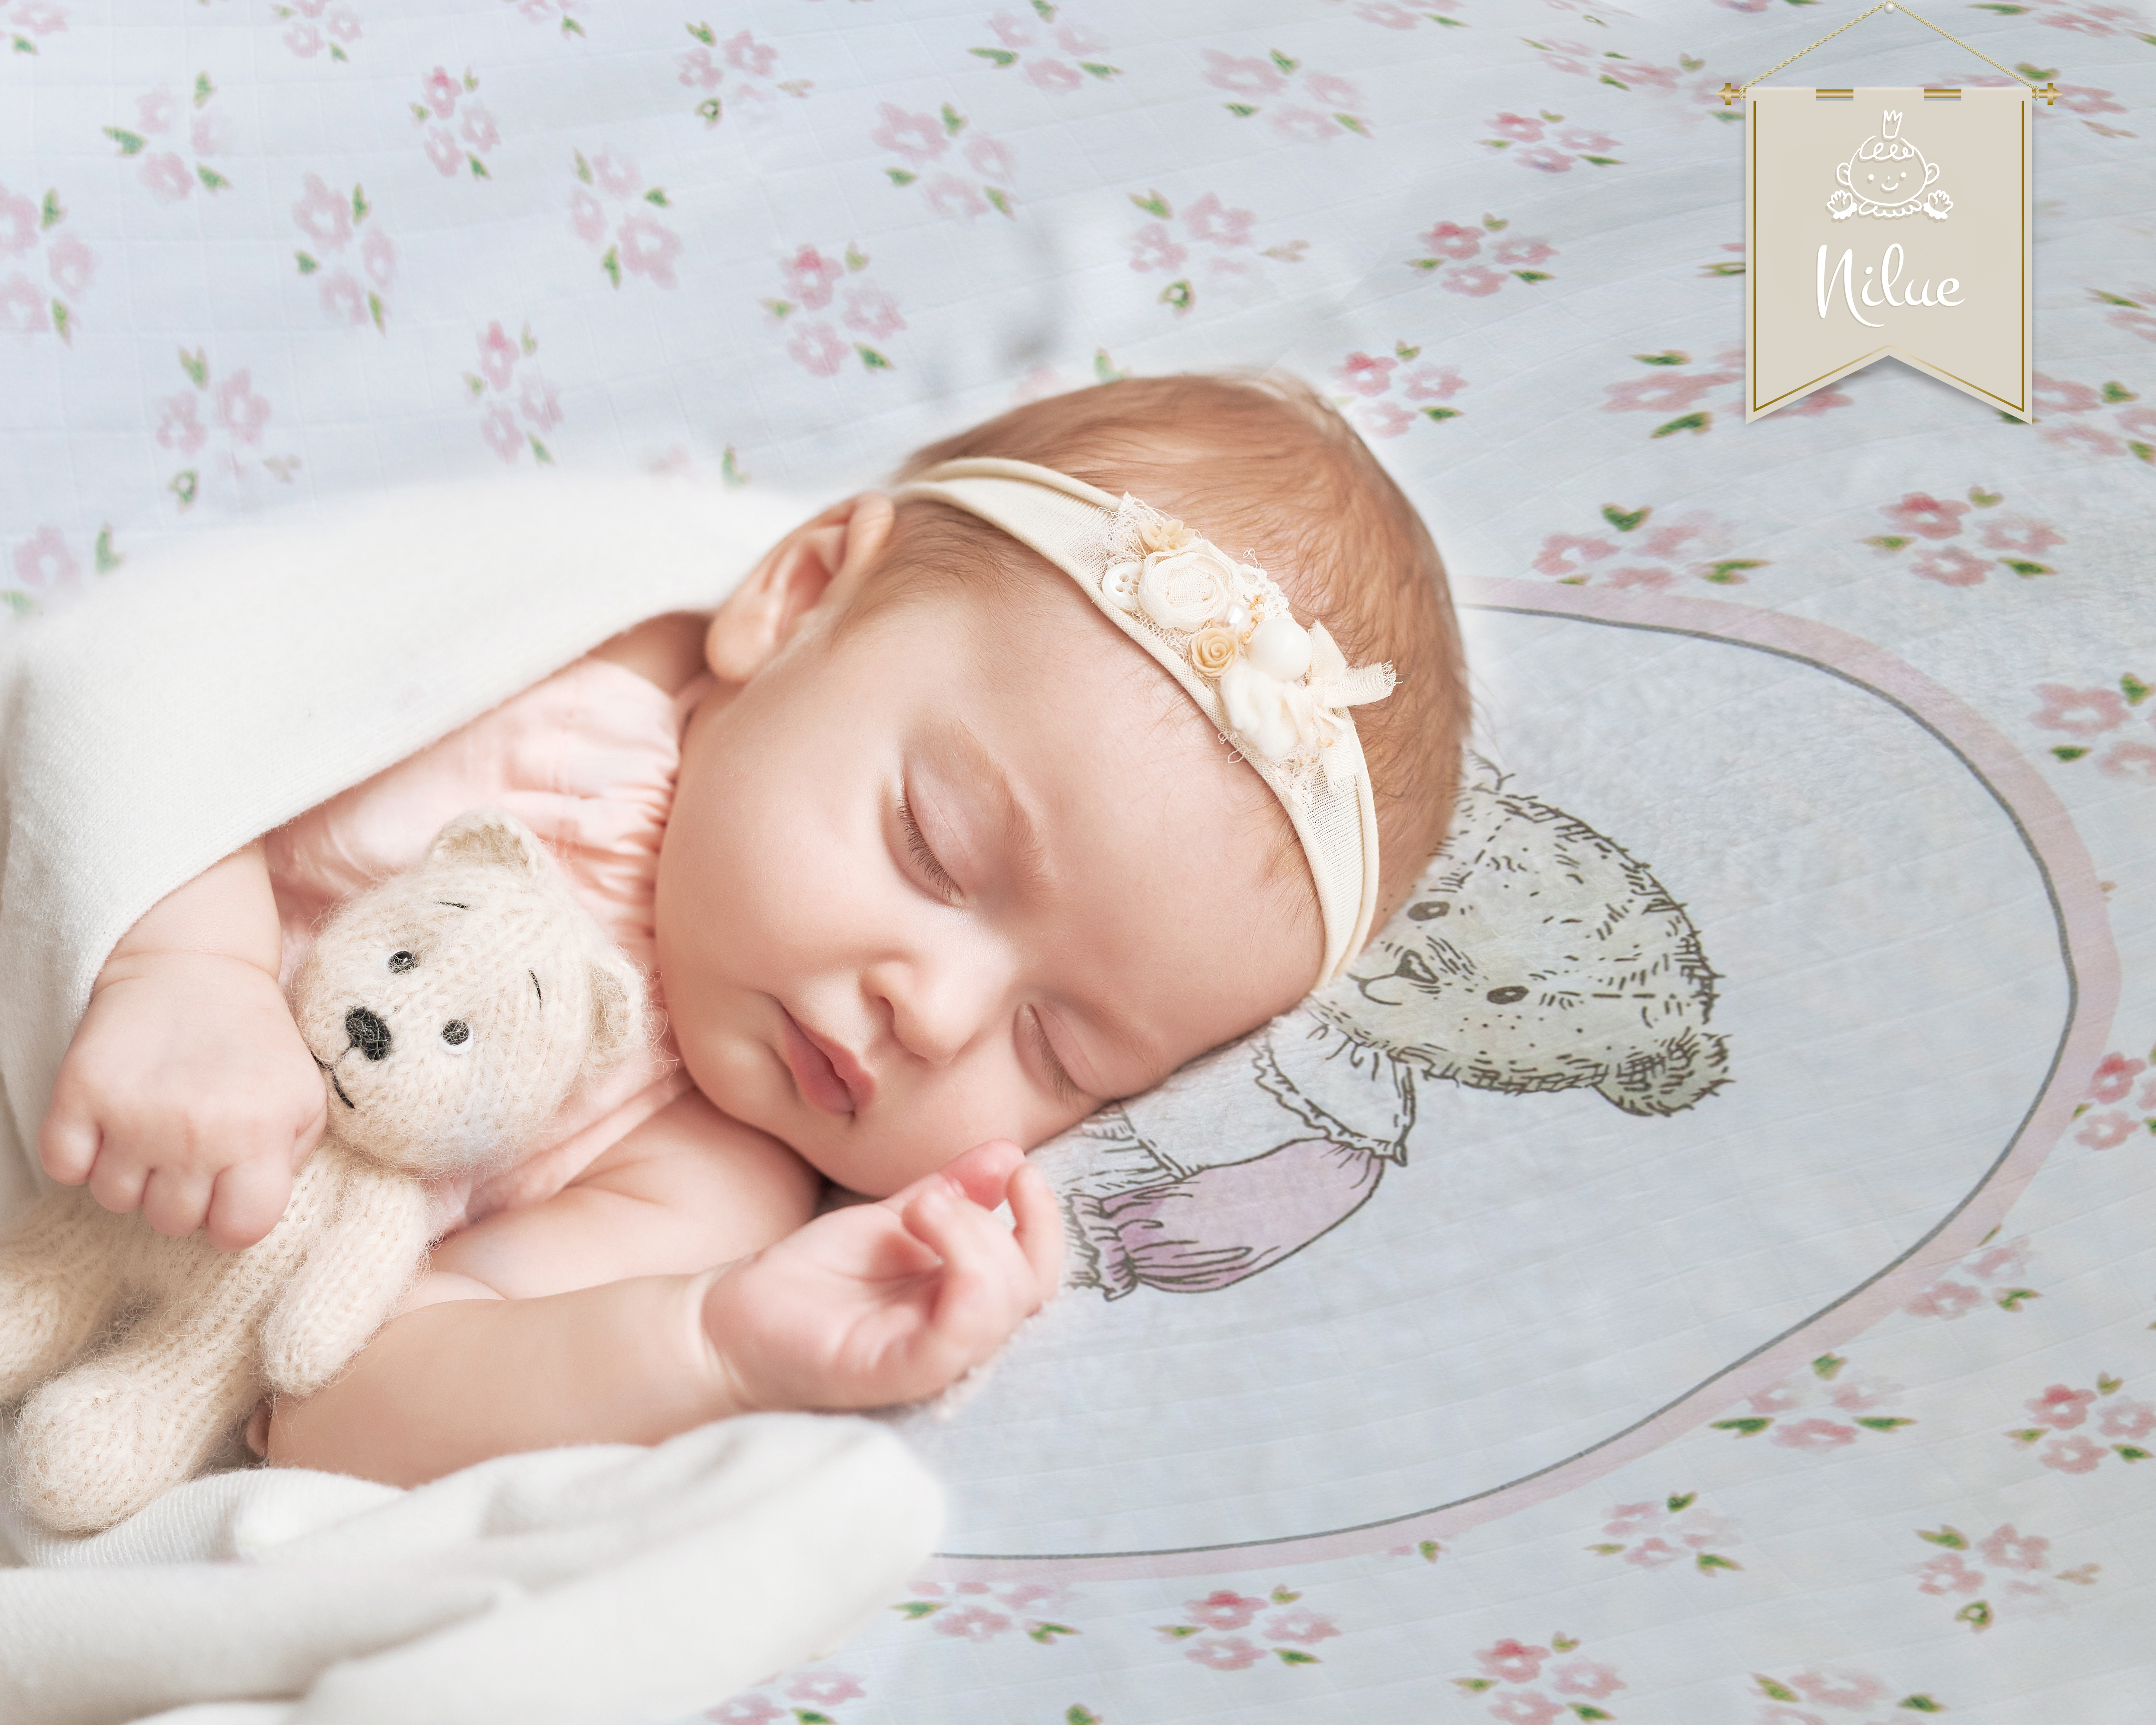 Фон для фото спящего малыша. Фото младенца девочки для вышивки. Әлди әлди Жазира Байырбекова текст. Baby Canvas Wallpaper. Казахские колыбельные песни